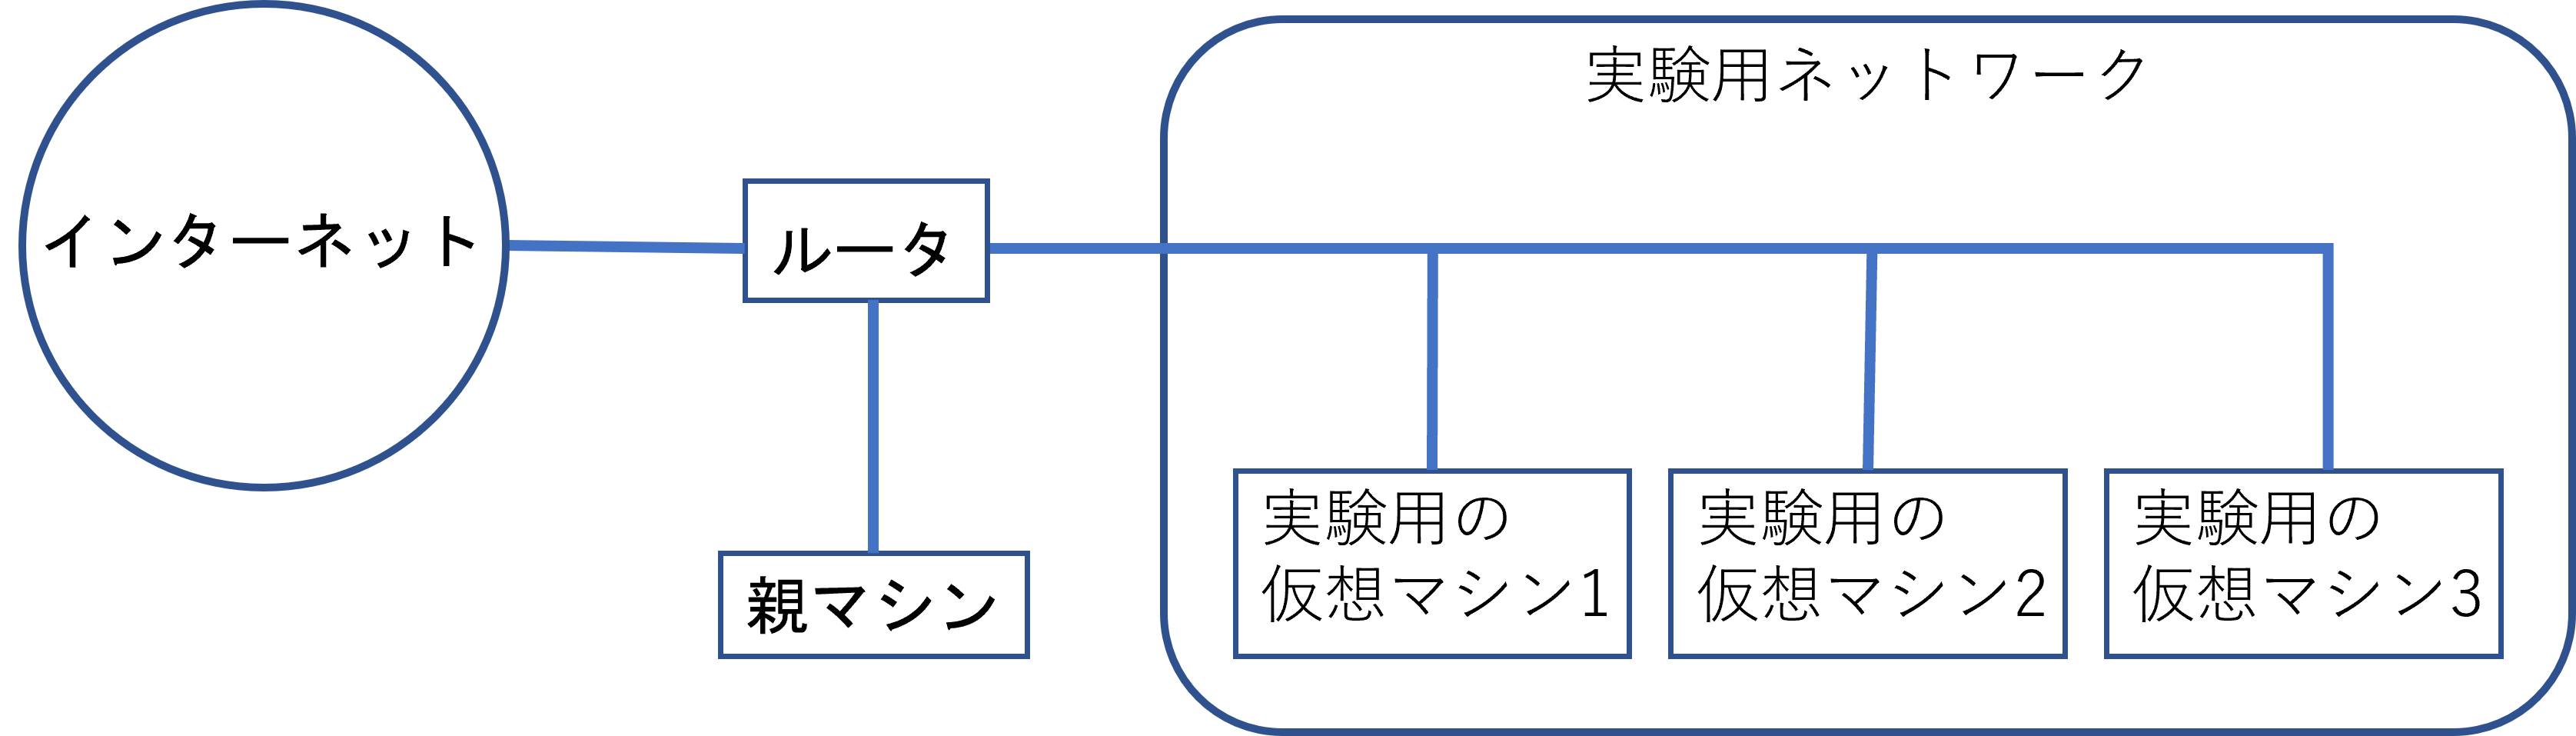 ネットワークの構成図